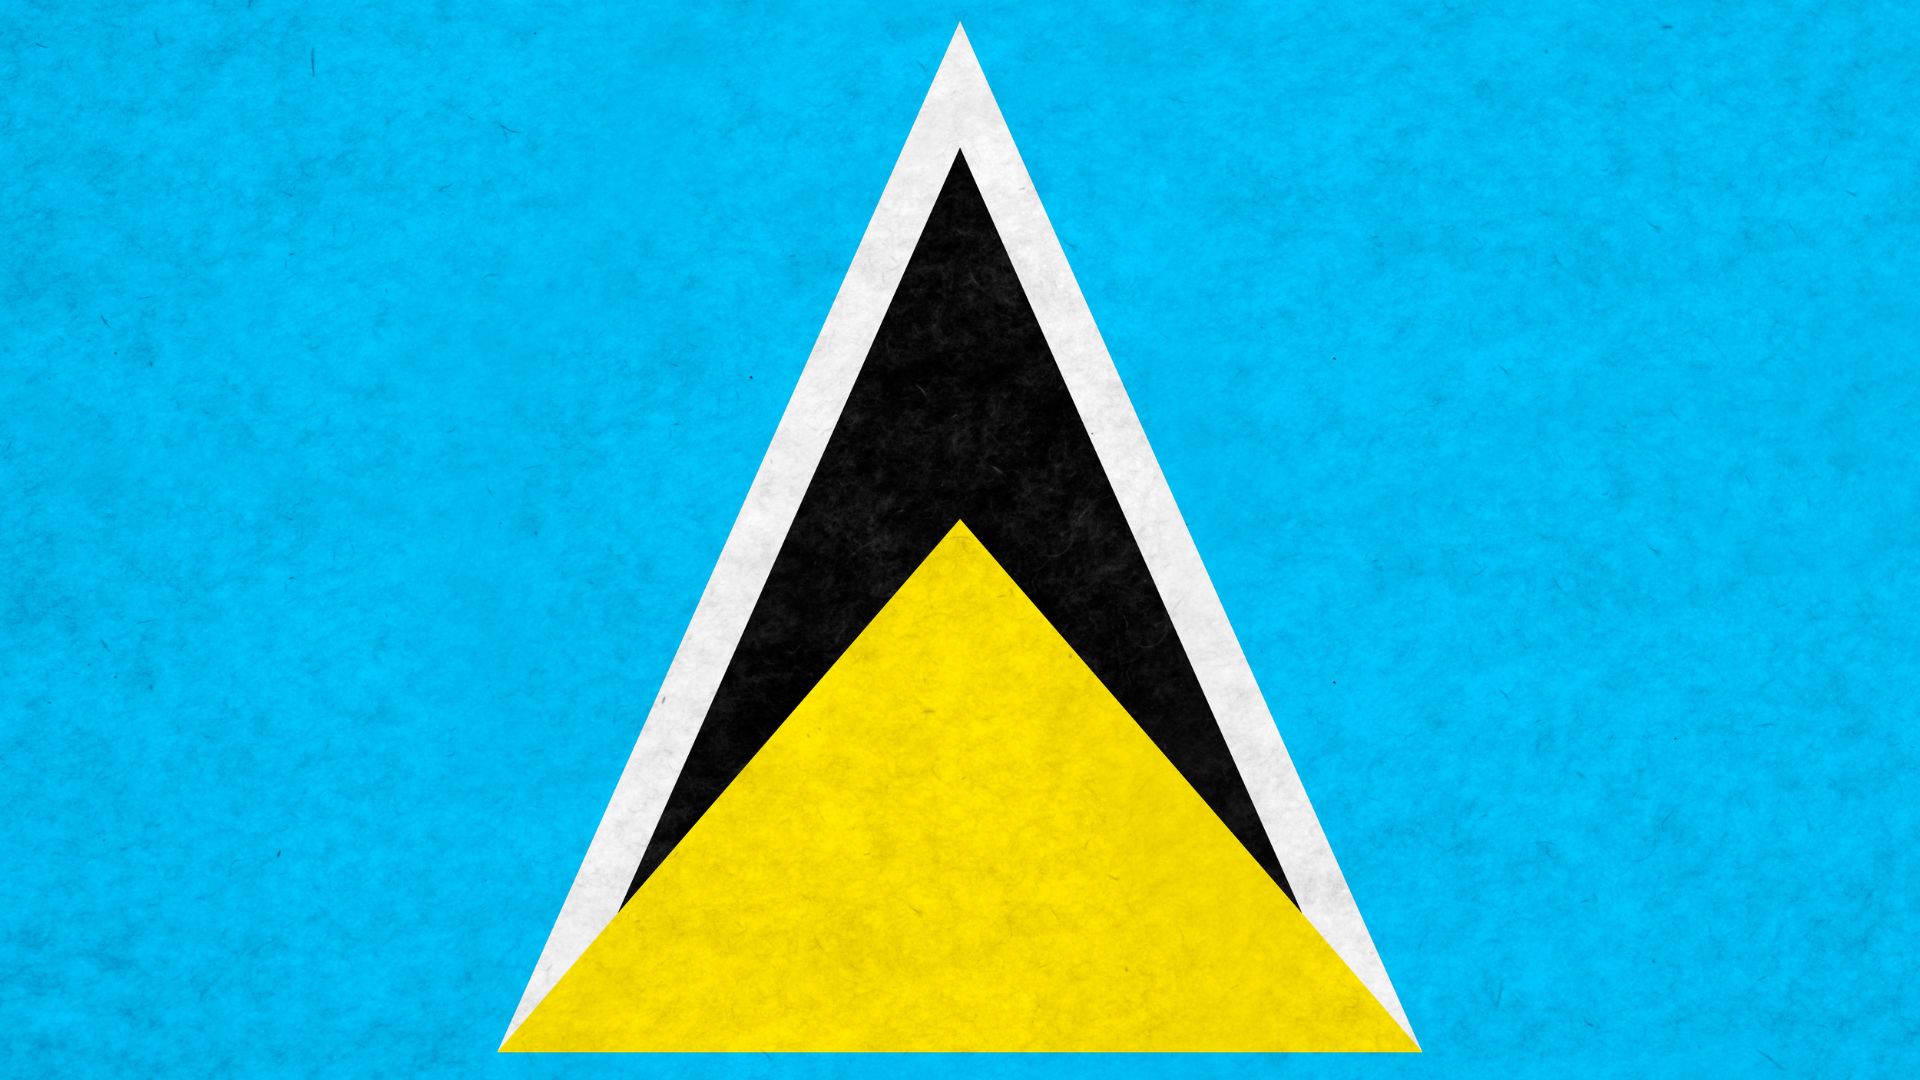 A Bandeira de Santa Lúcia possui 4 cores: azul, branco, preto e amarelo. A cor azul representa fidelidade. O amarelo representa a prosperidade e o sol do Caribe. O preto e o branco representam a mistura de raças que deram identidade à ilha.